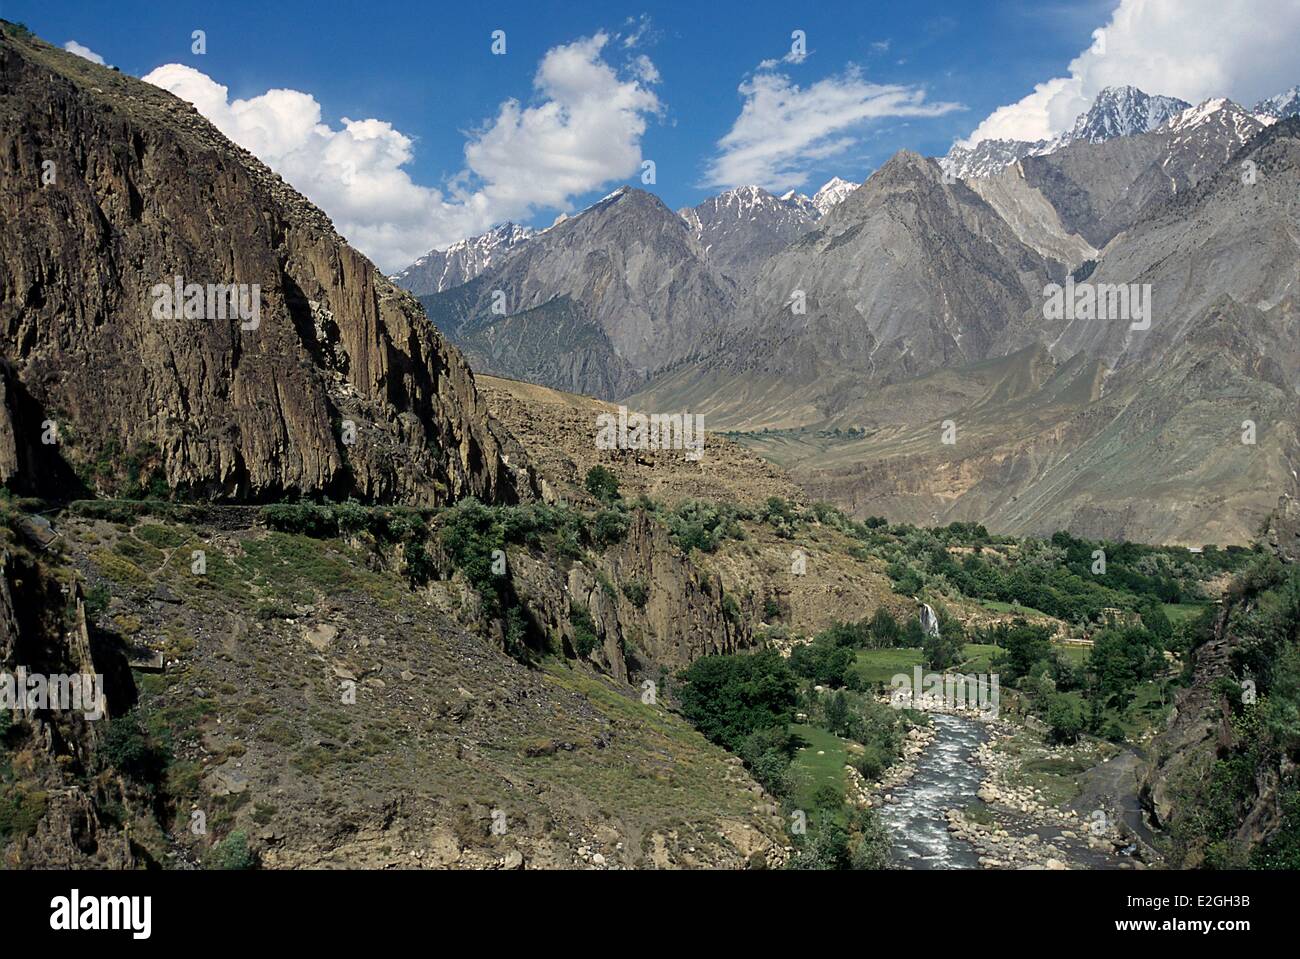 Vallées Kalash Khyber Pakhtunkhwa au Pakistan les vallées en aval de Rumbur et Bumburet où coule la rivière Kalash avec montagnes en arrière-plan de la vallée de Chitral Banque D'Images